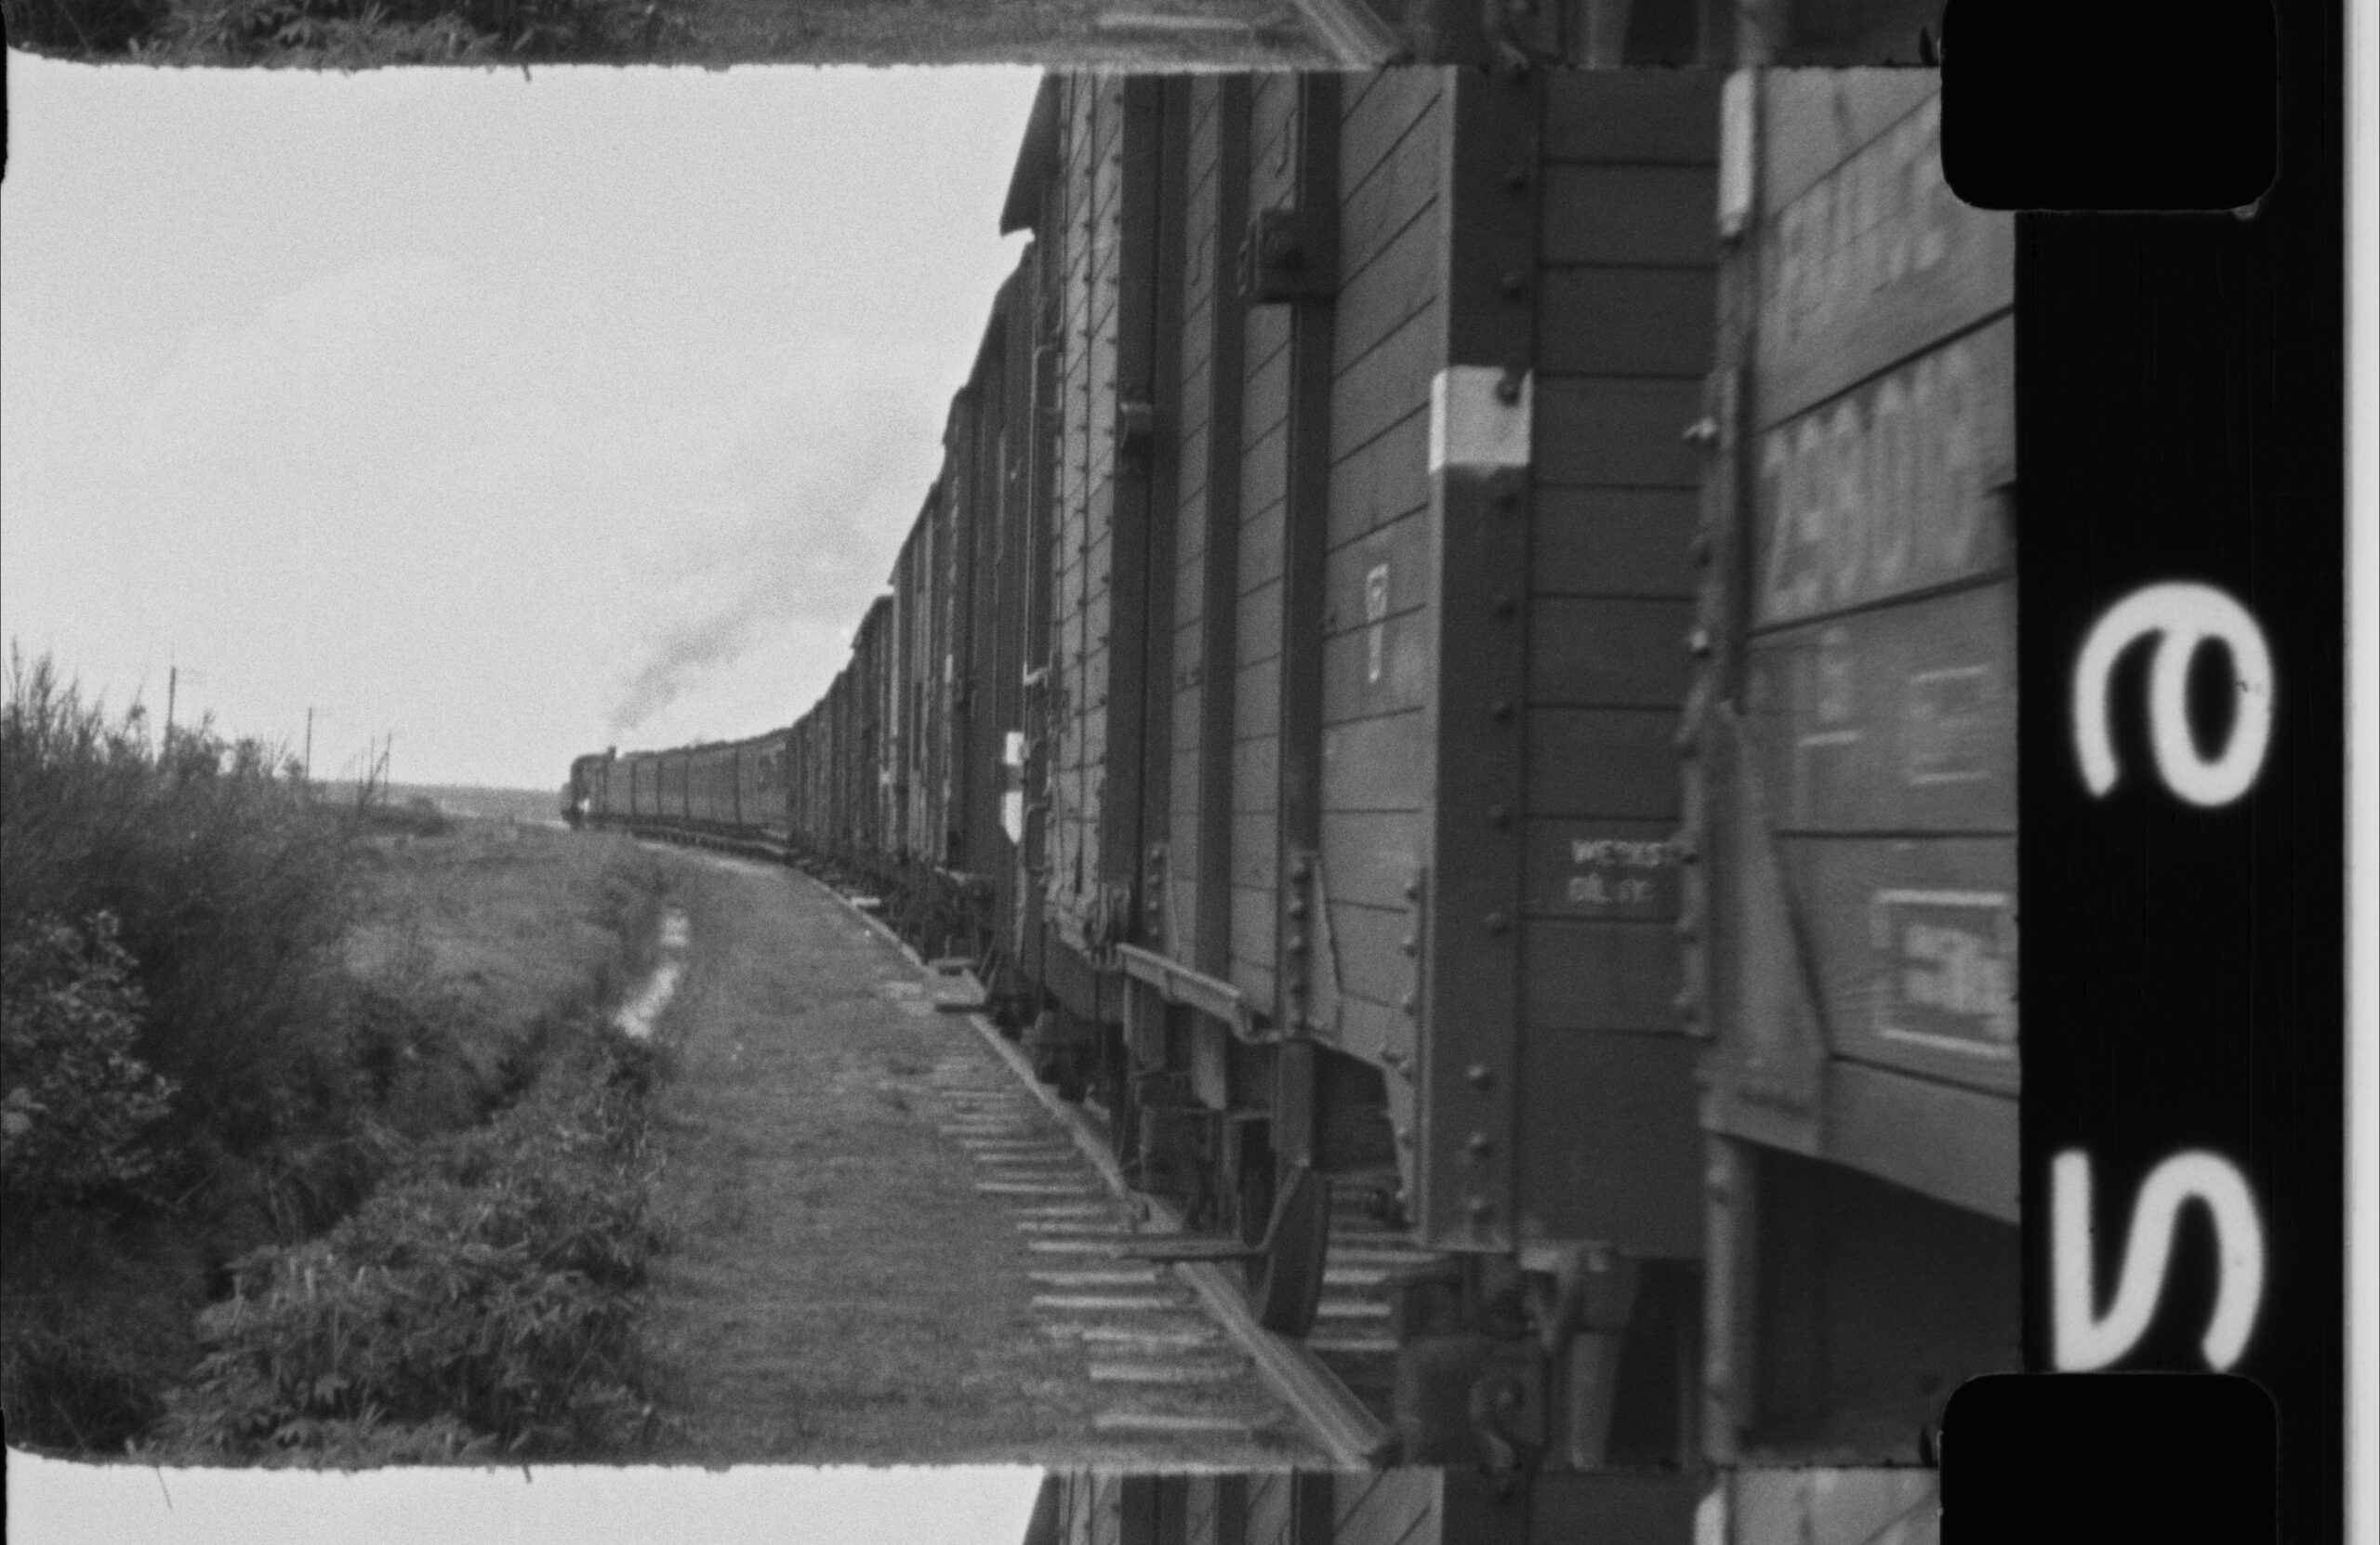 VHH_Publication_SCHMIDT-Fabian_The-Westerbork-Film-Revisited_2020_Image-scaled